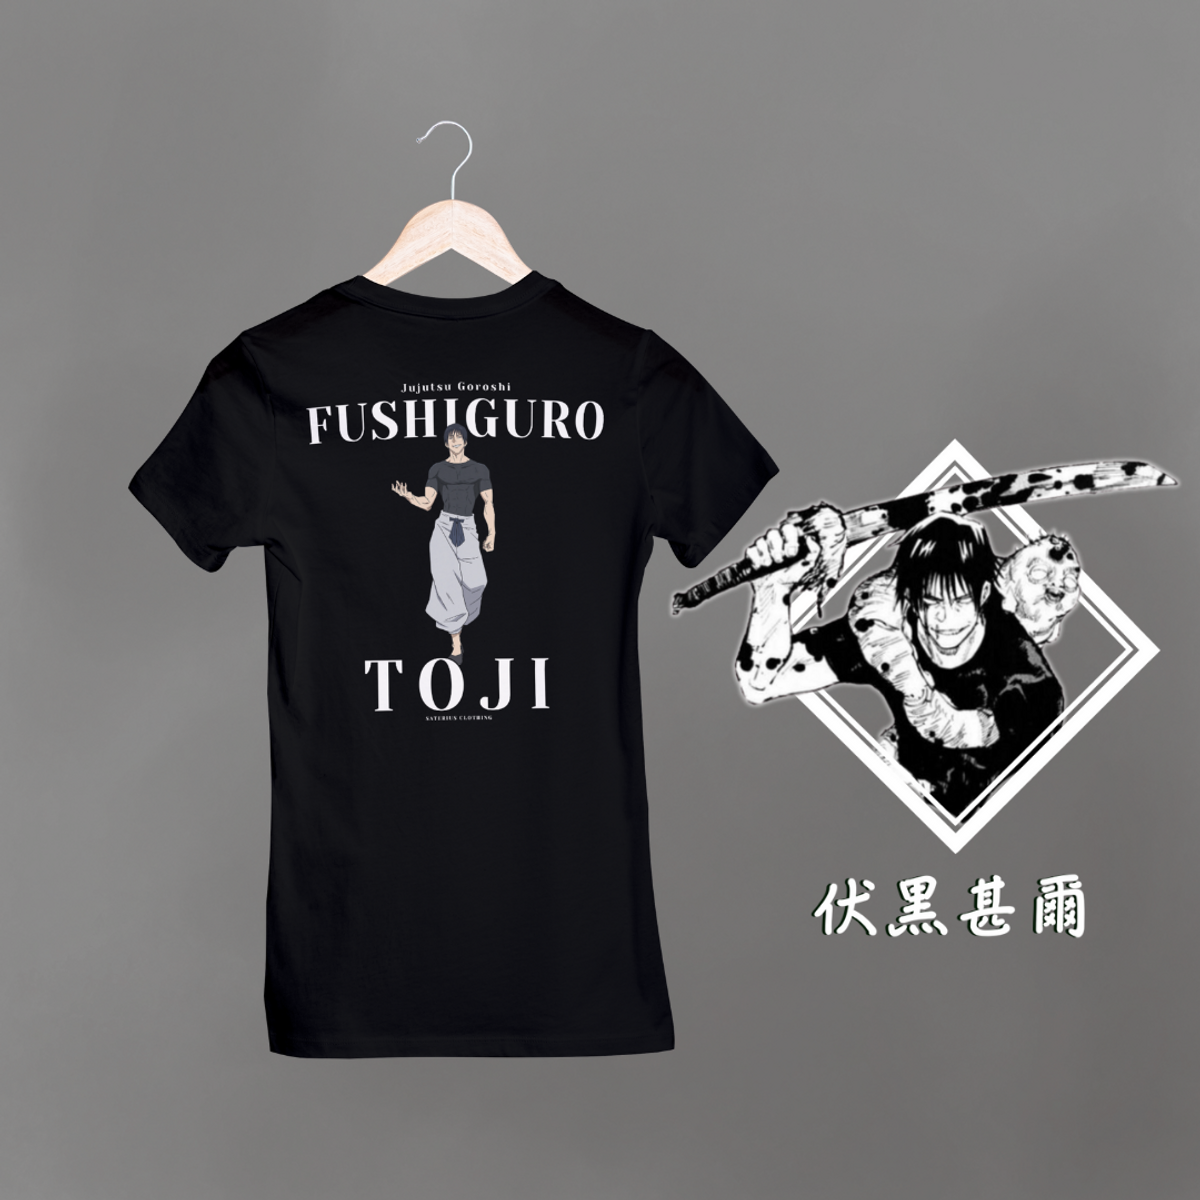 Nome do produto: Camiseta Toji Fushiguro